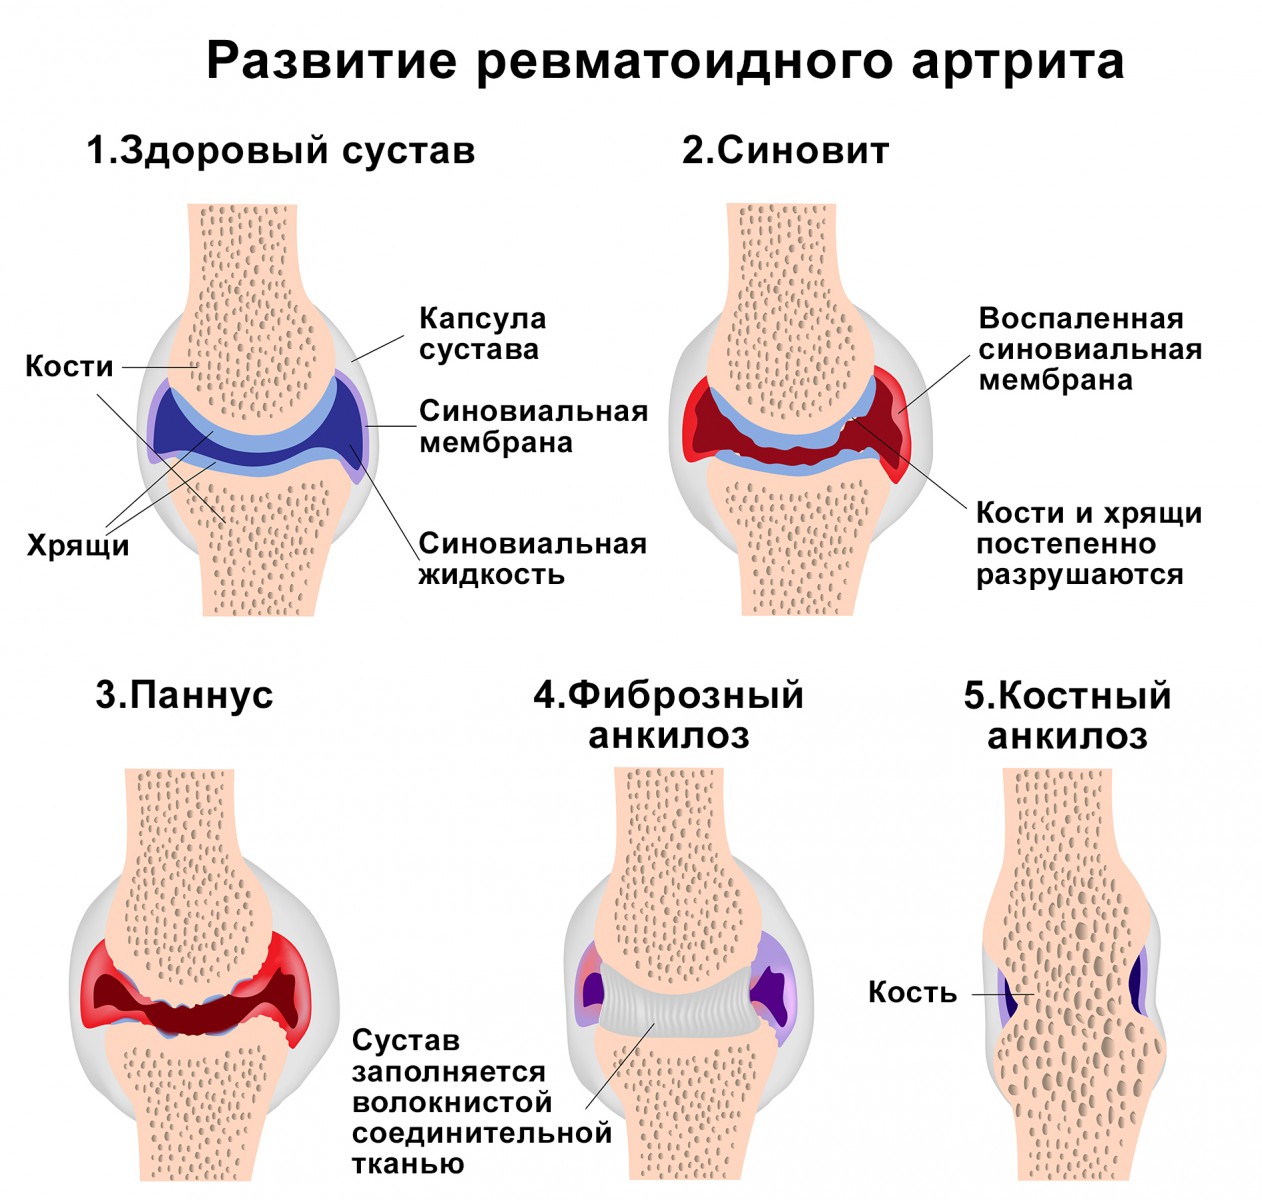 Болезнь суставов артрита. Ревматоидный артрит алгоритм лечения схема. Ревматизм и ревматоидный артрит. Основные причины ревматоидного артрита. Клинические проявления ревматического артрита.